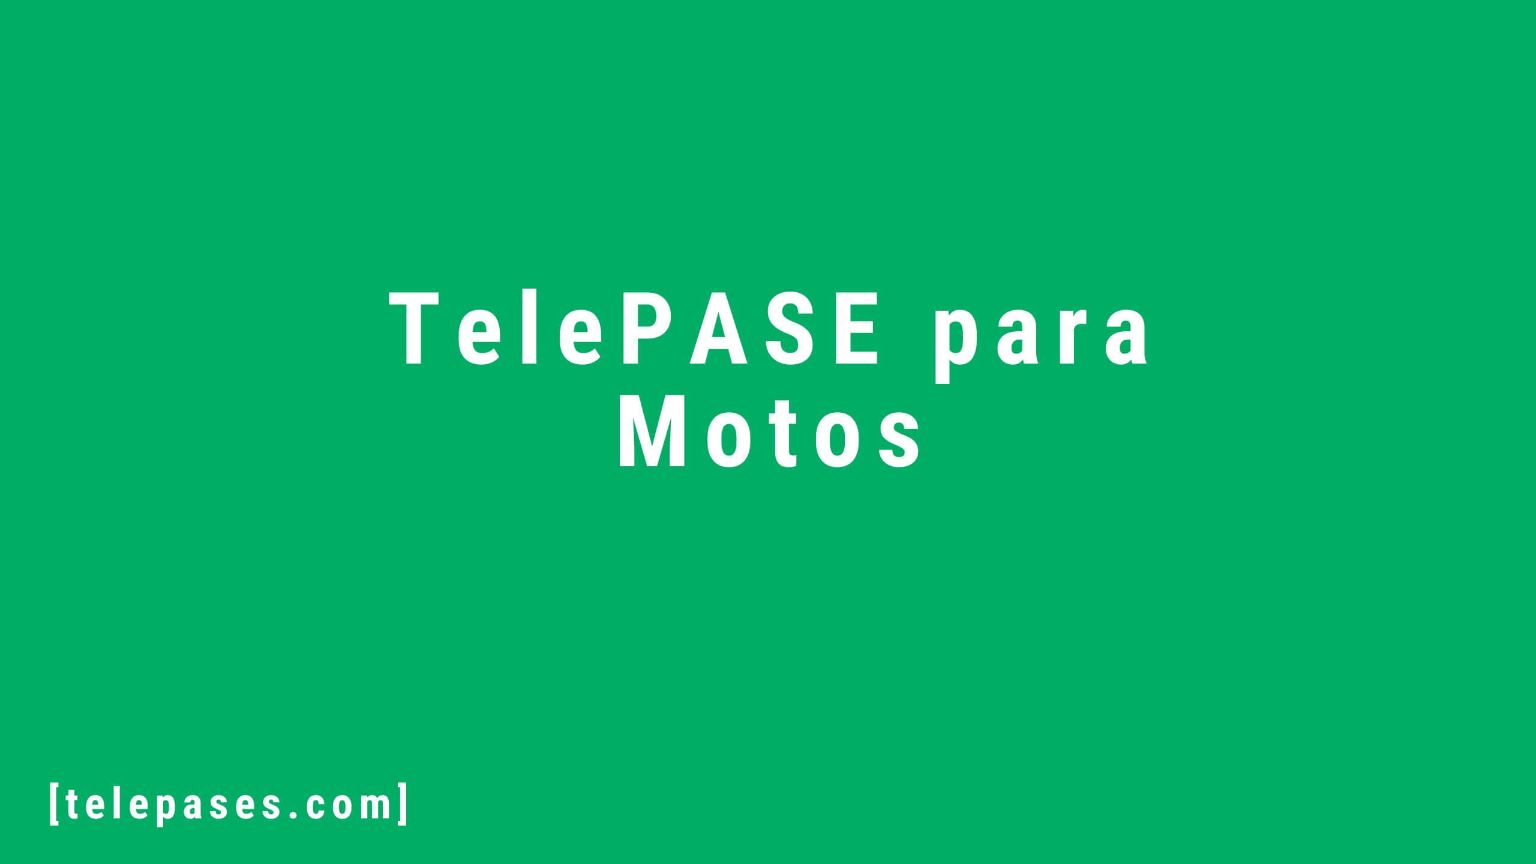 TelePASE para Motos